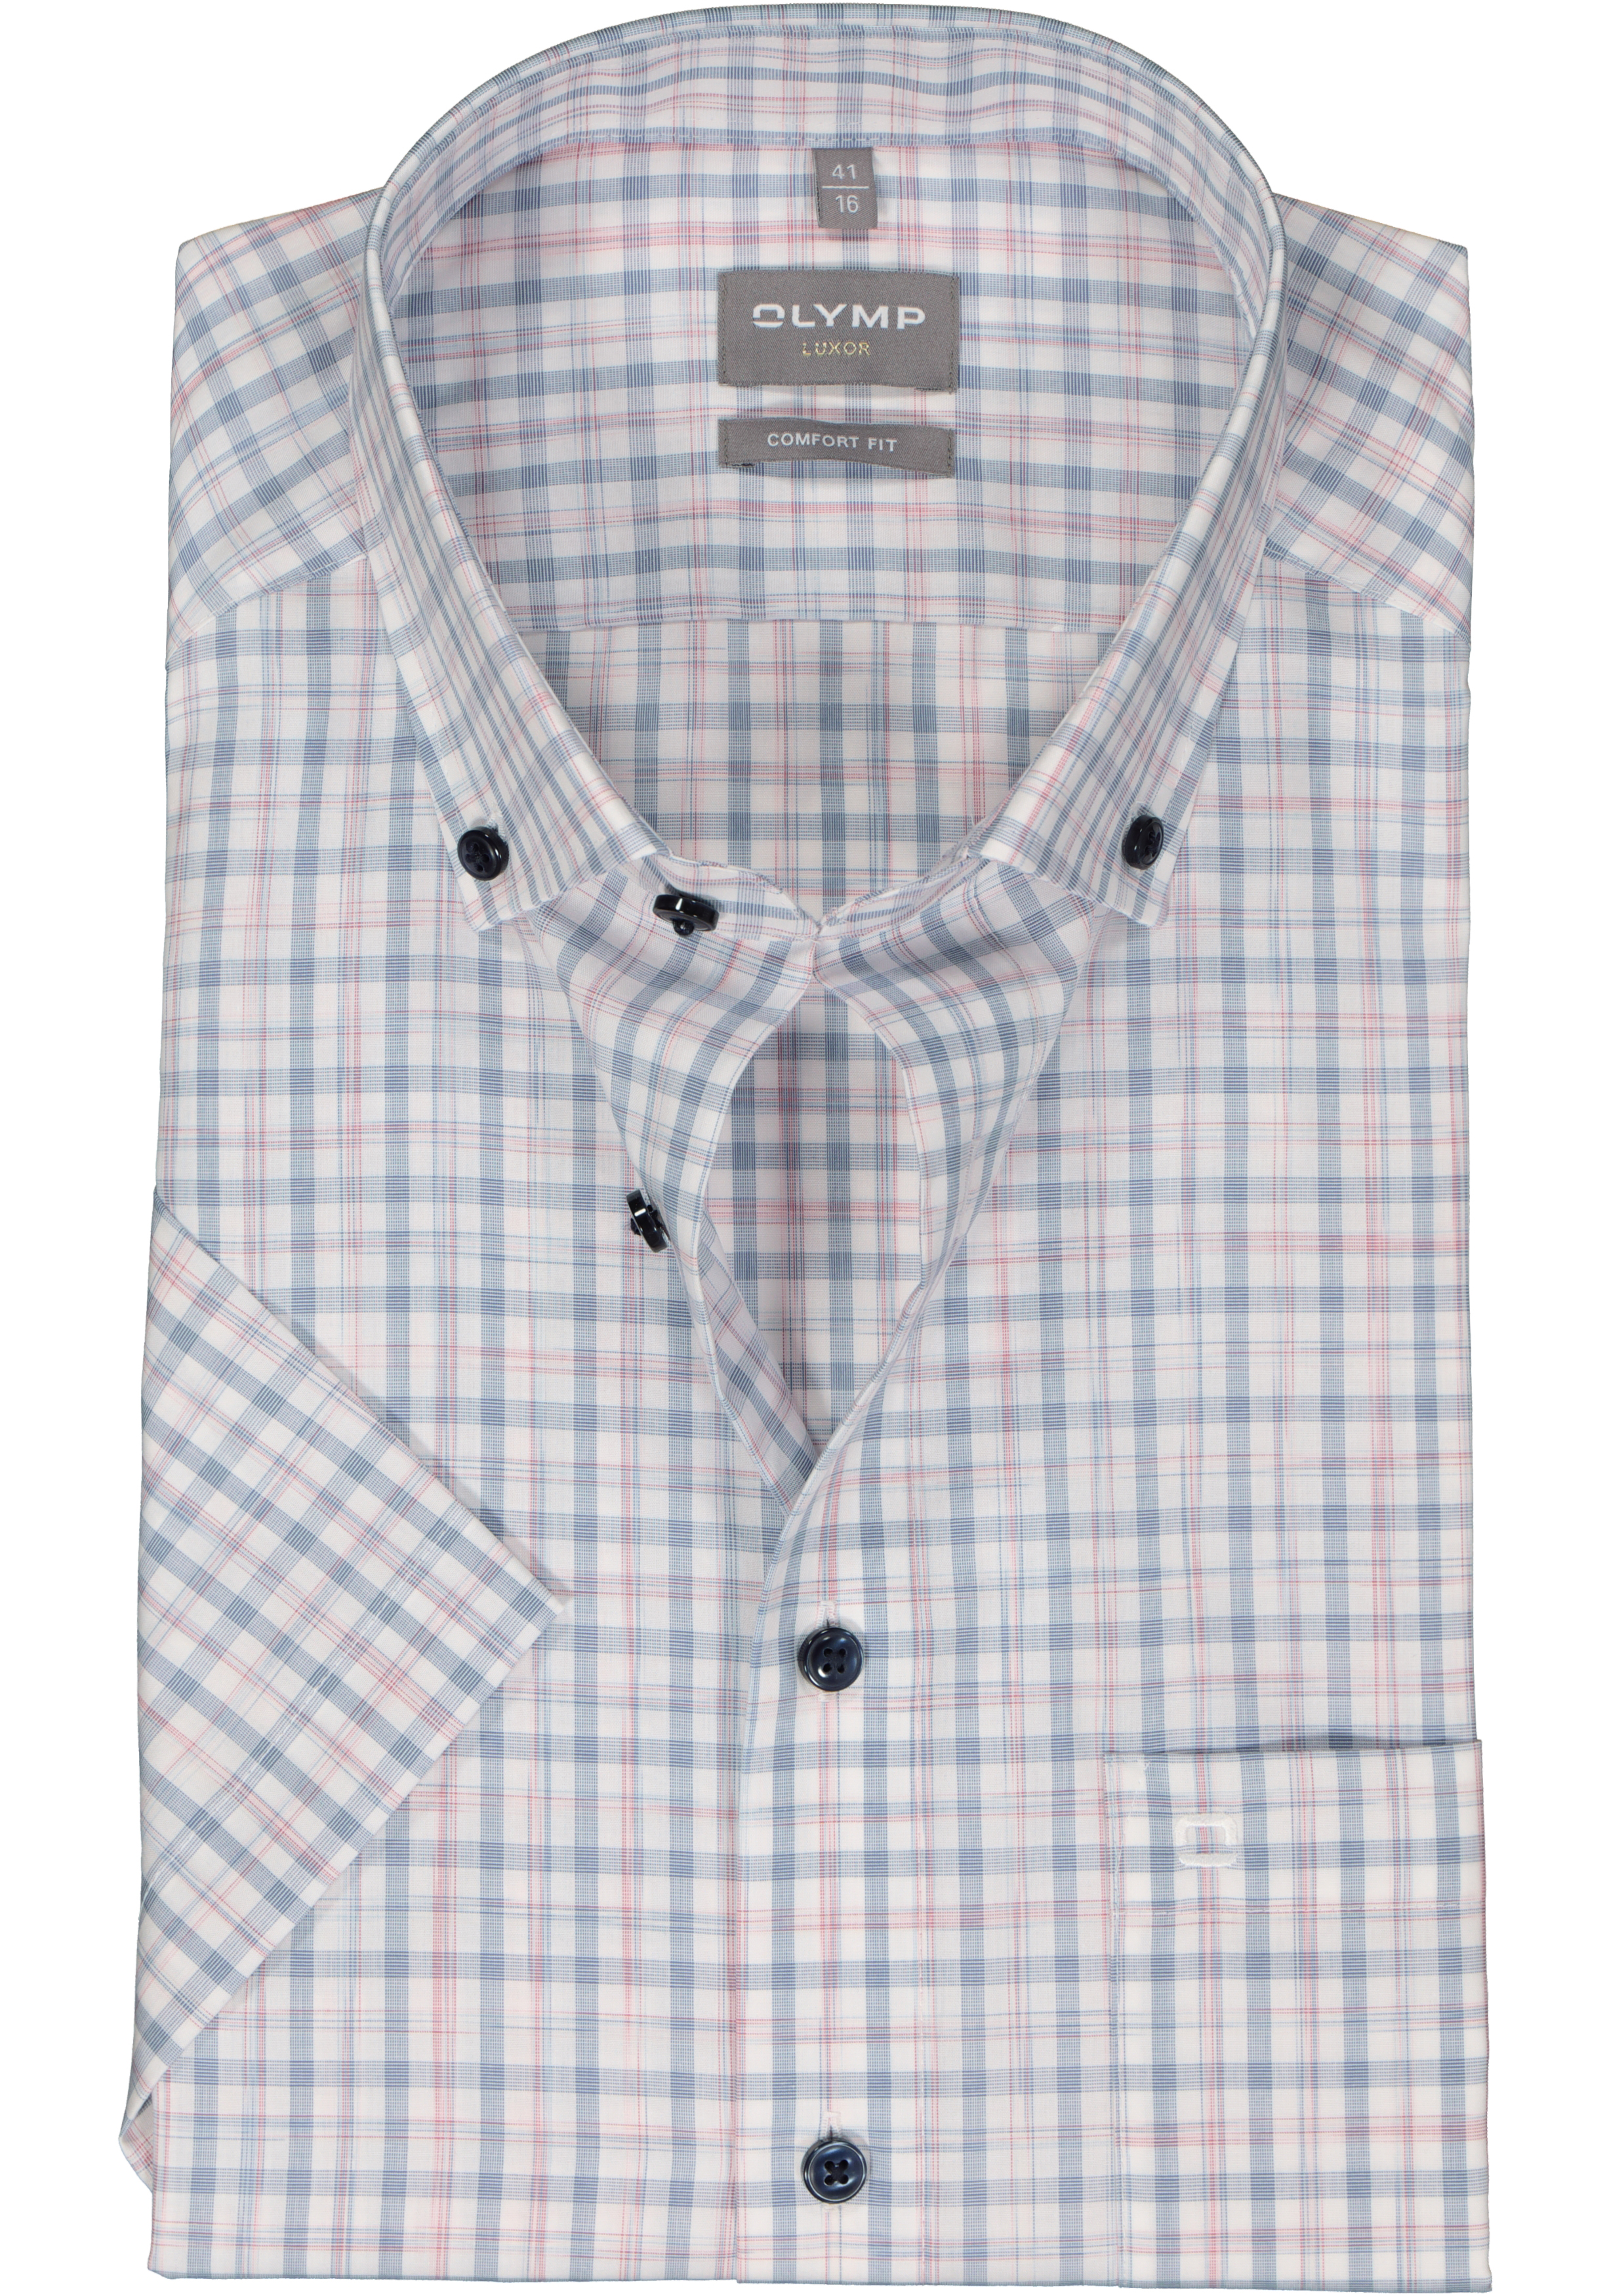 OLYMP comfort fit overhemd, korte mouw, popeline, wit met lichtblauw en roze geruit